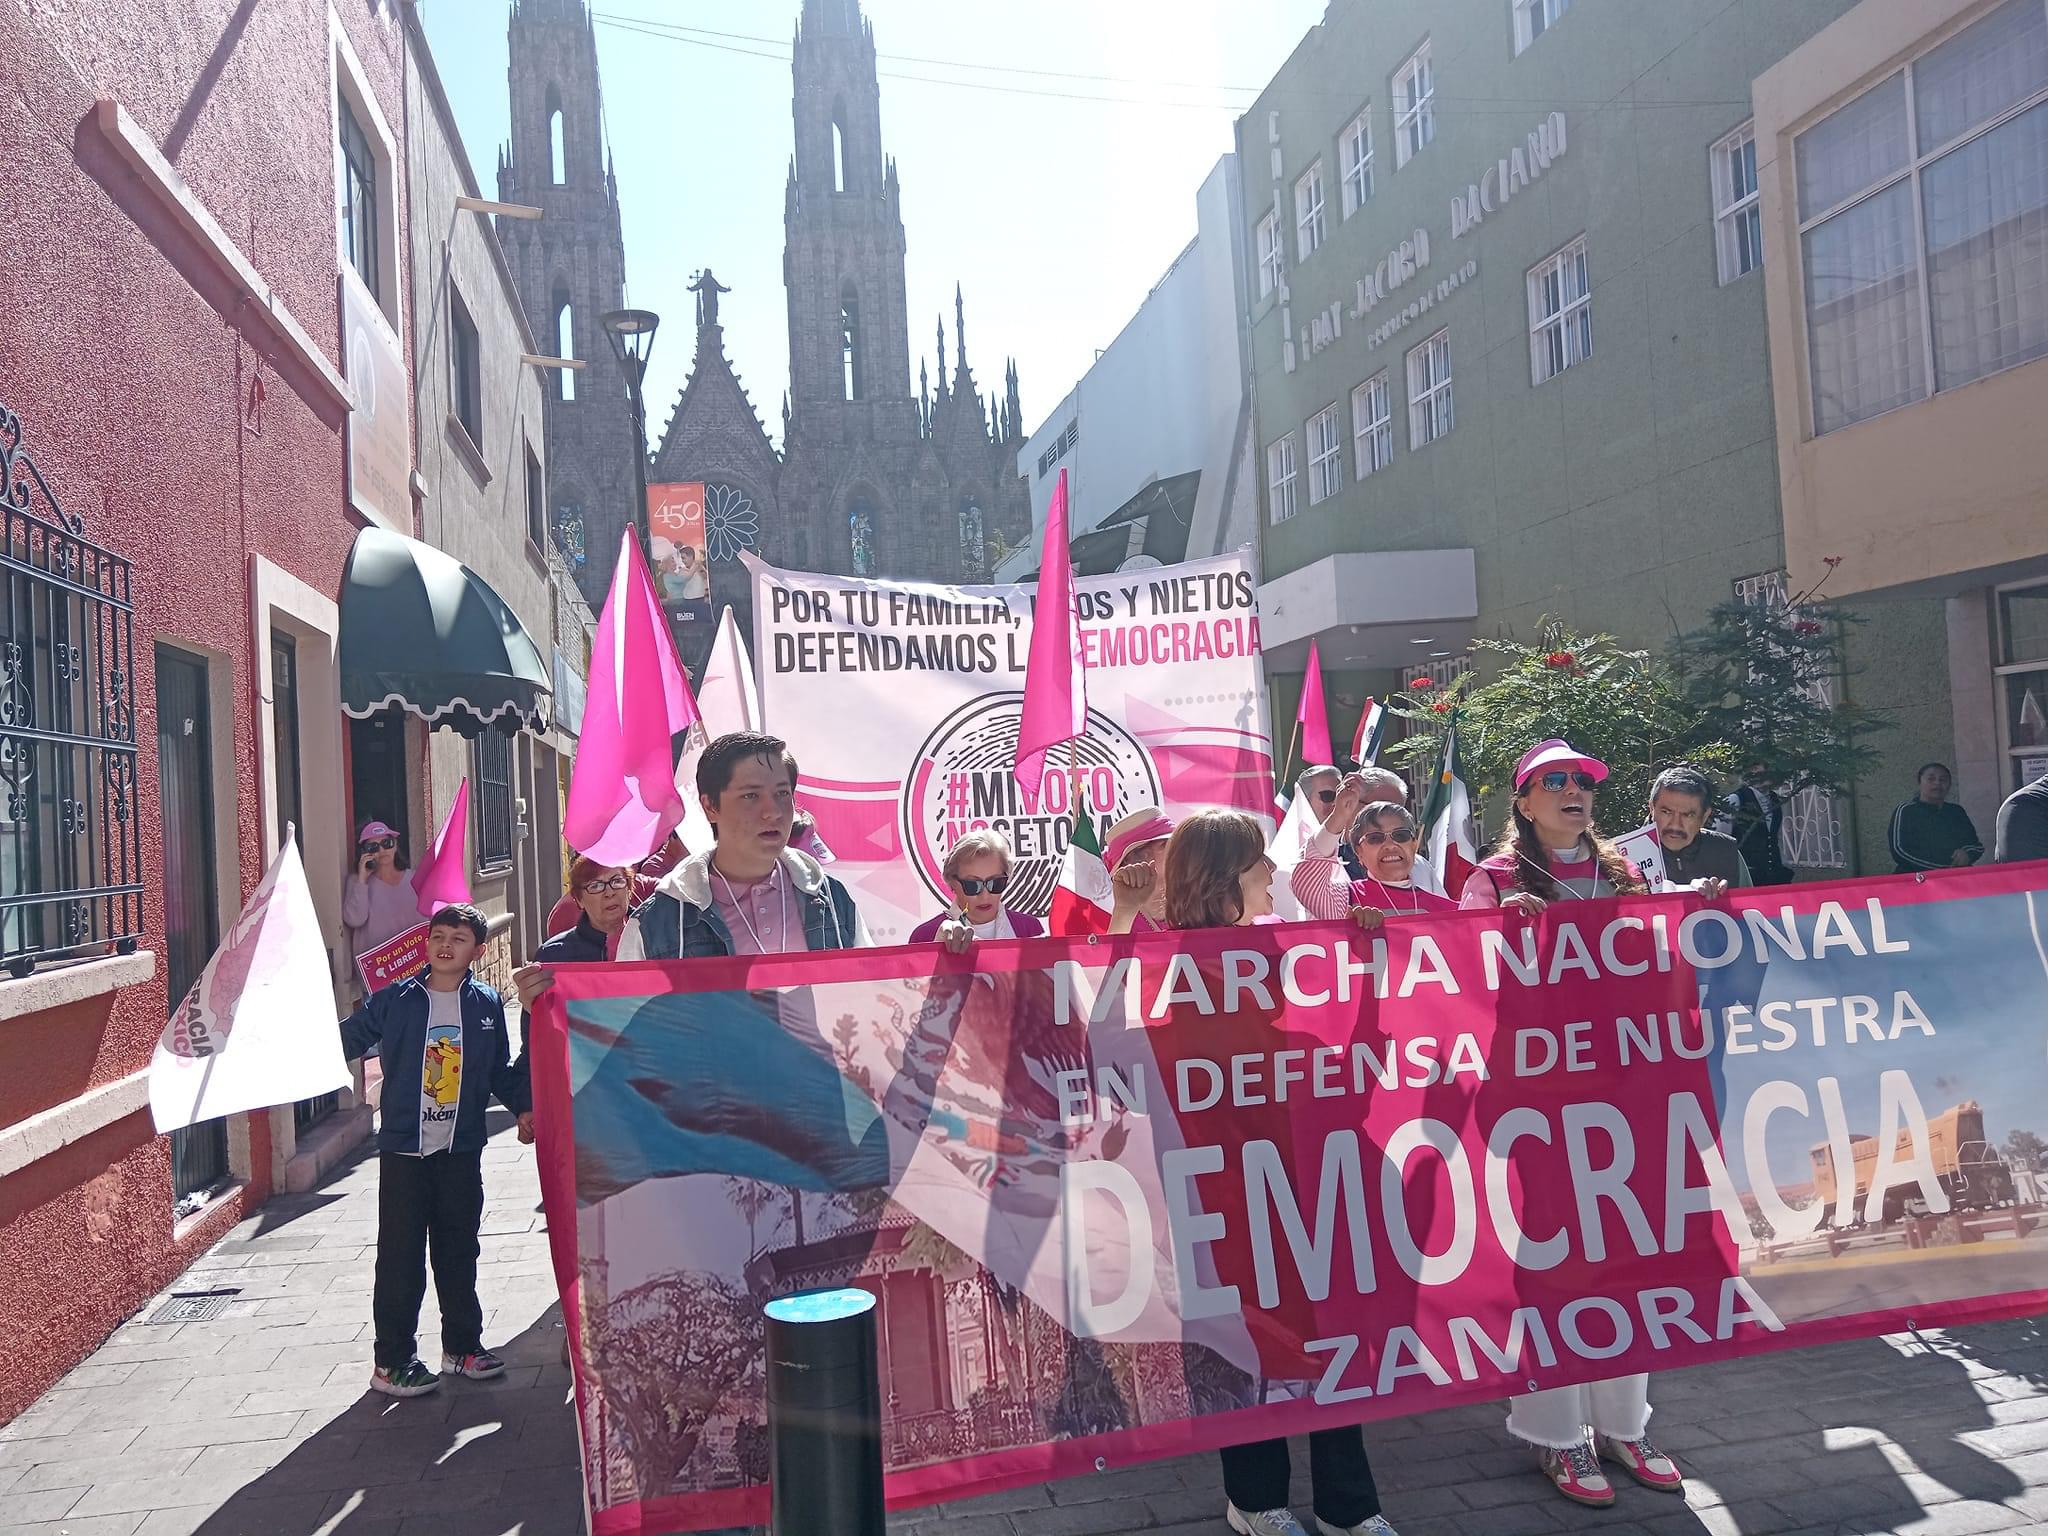 Alrededor de 400 personas participaron en “Marcha por la Democracia” en Zamora